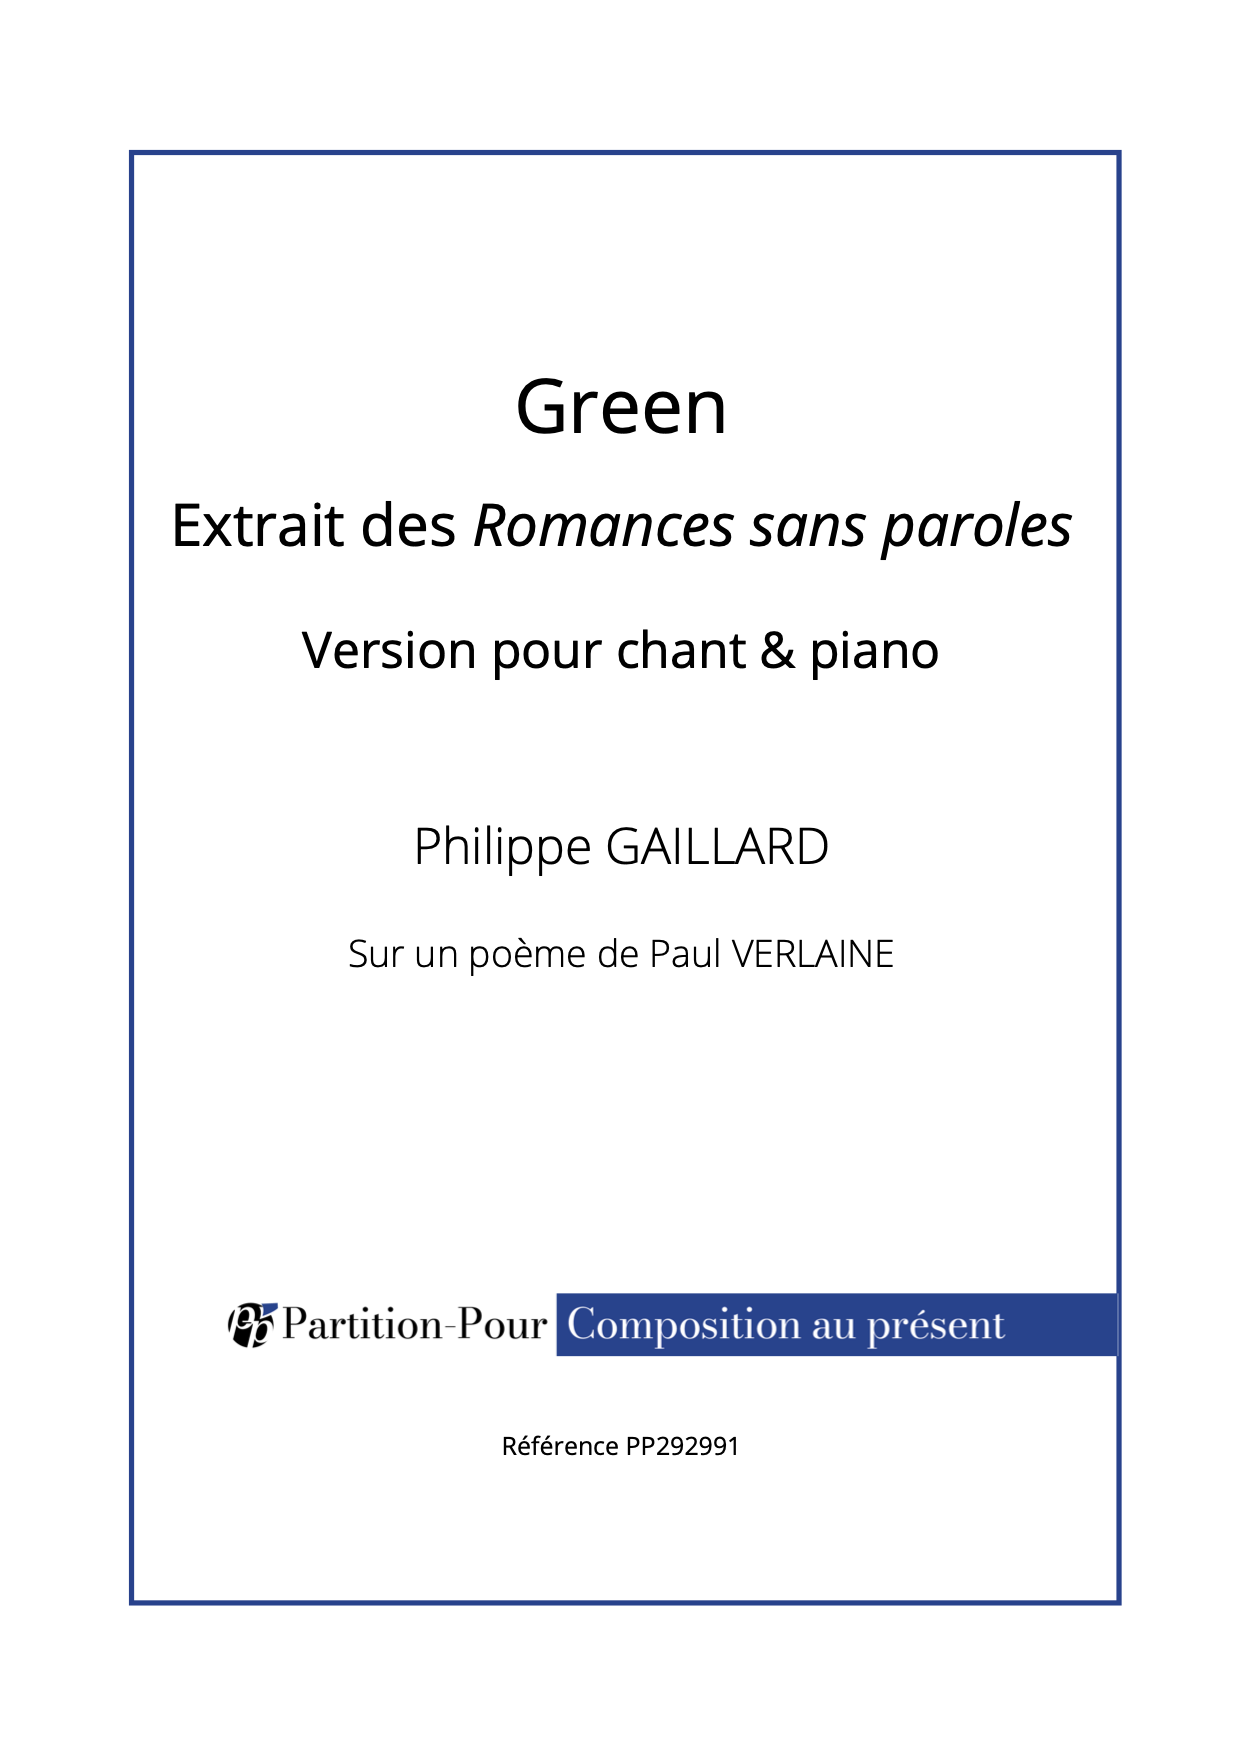 PP292991 - Gaillard P - Romances sans paroles - Green - chant & piano -présentation